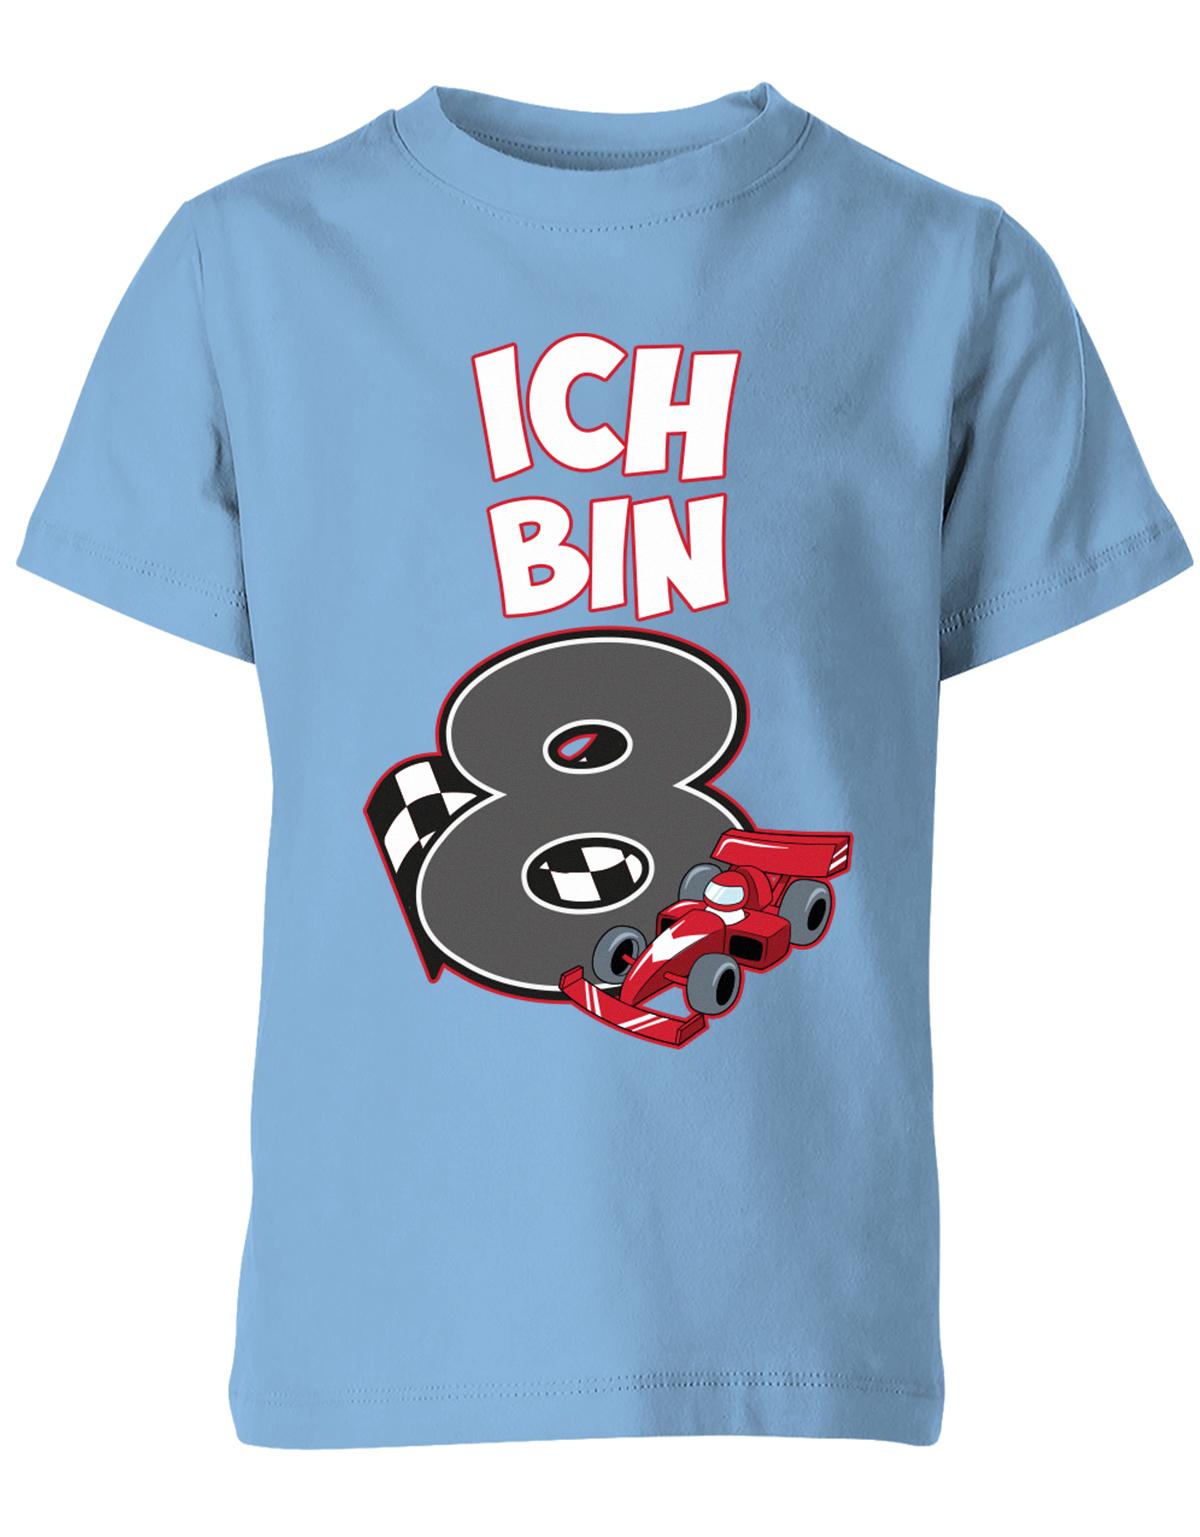 ich-bin-8-autorennen-rennwagen-geburtstag-rennfahrer-kinder-shirt-hellblau